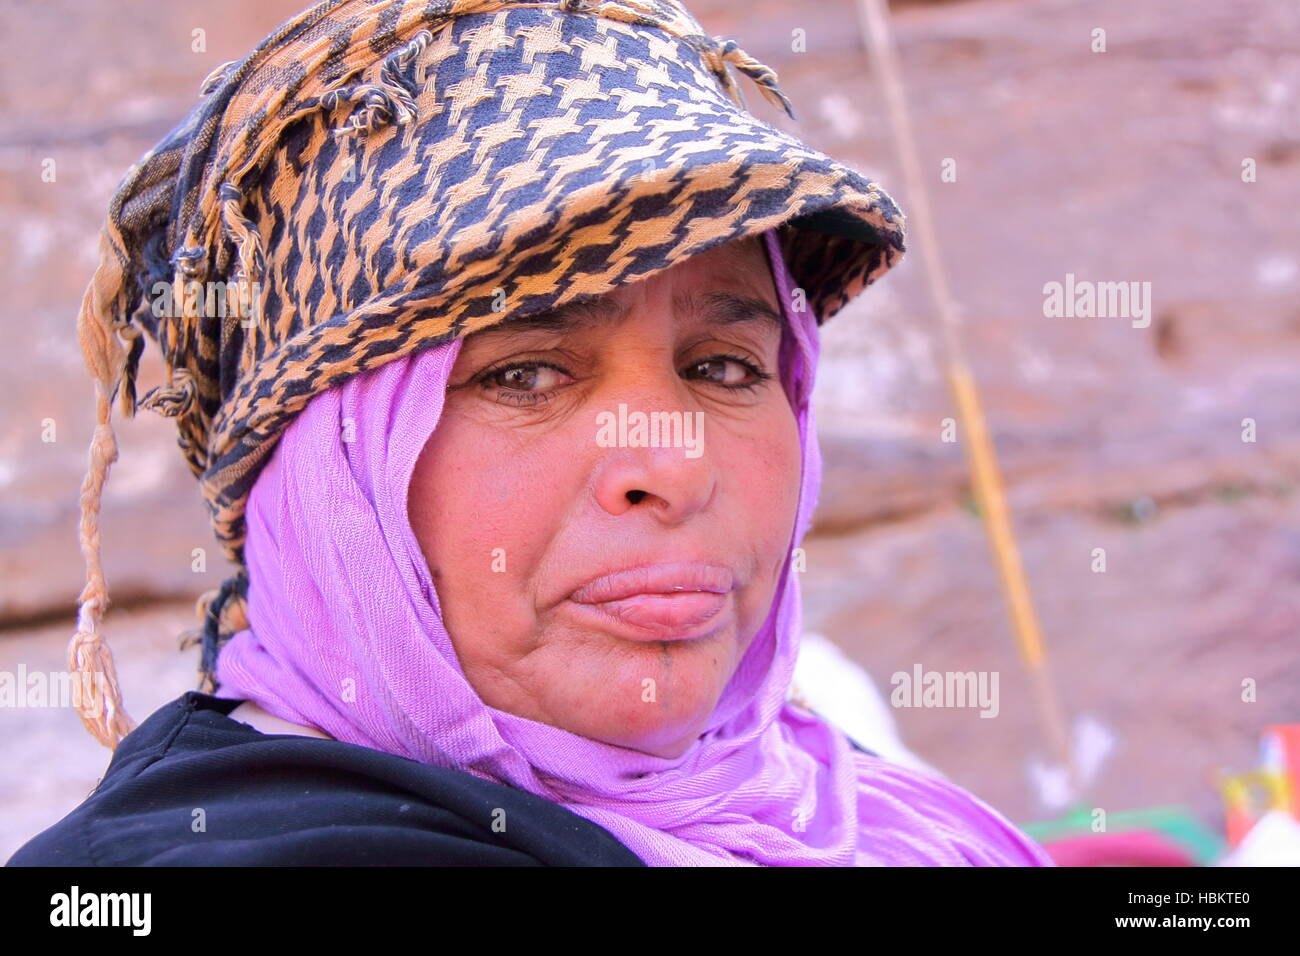 PETRA, Jordanie : Portrait d'une femme bédouine avec robe colorée Banque D'Images